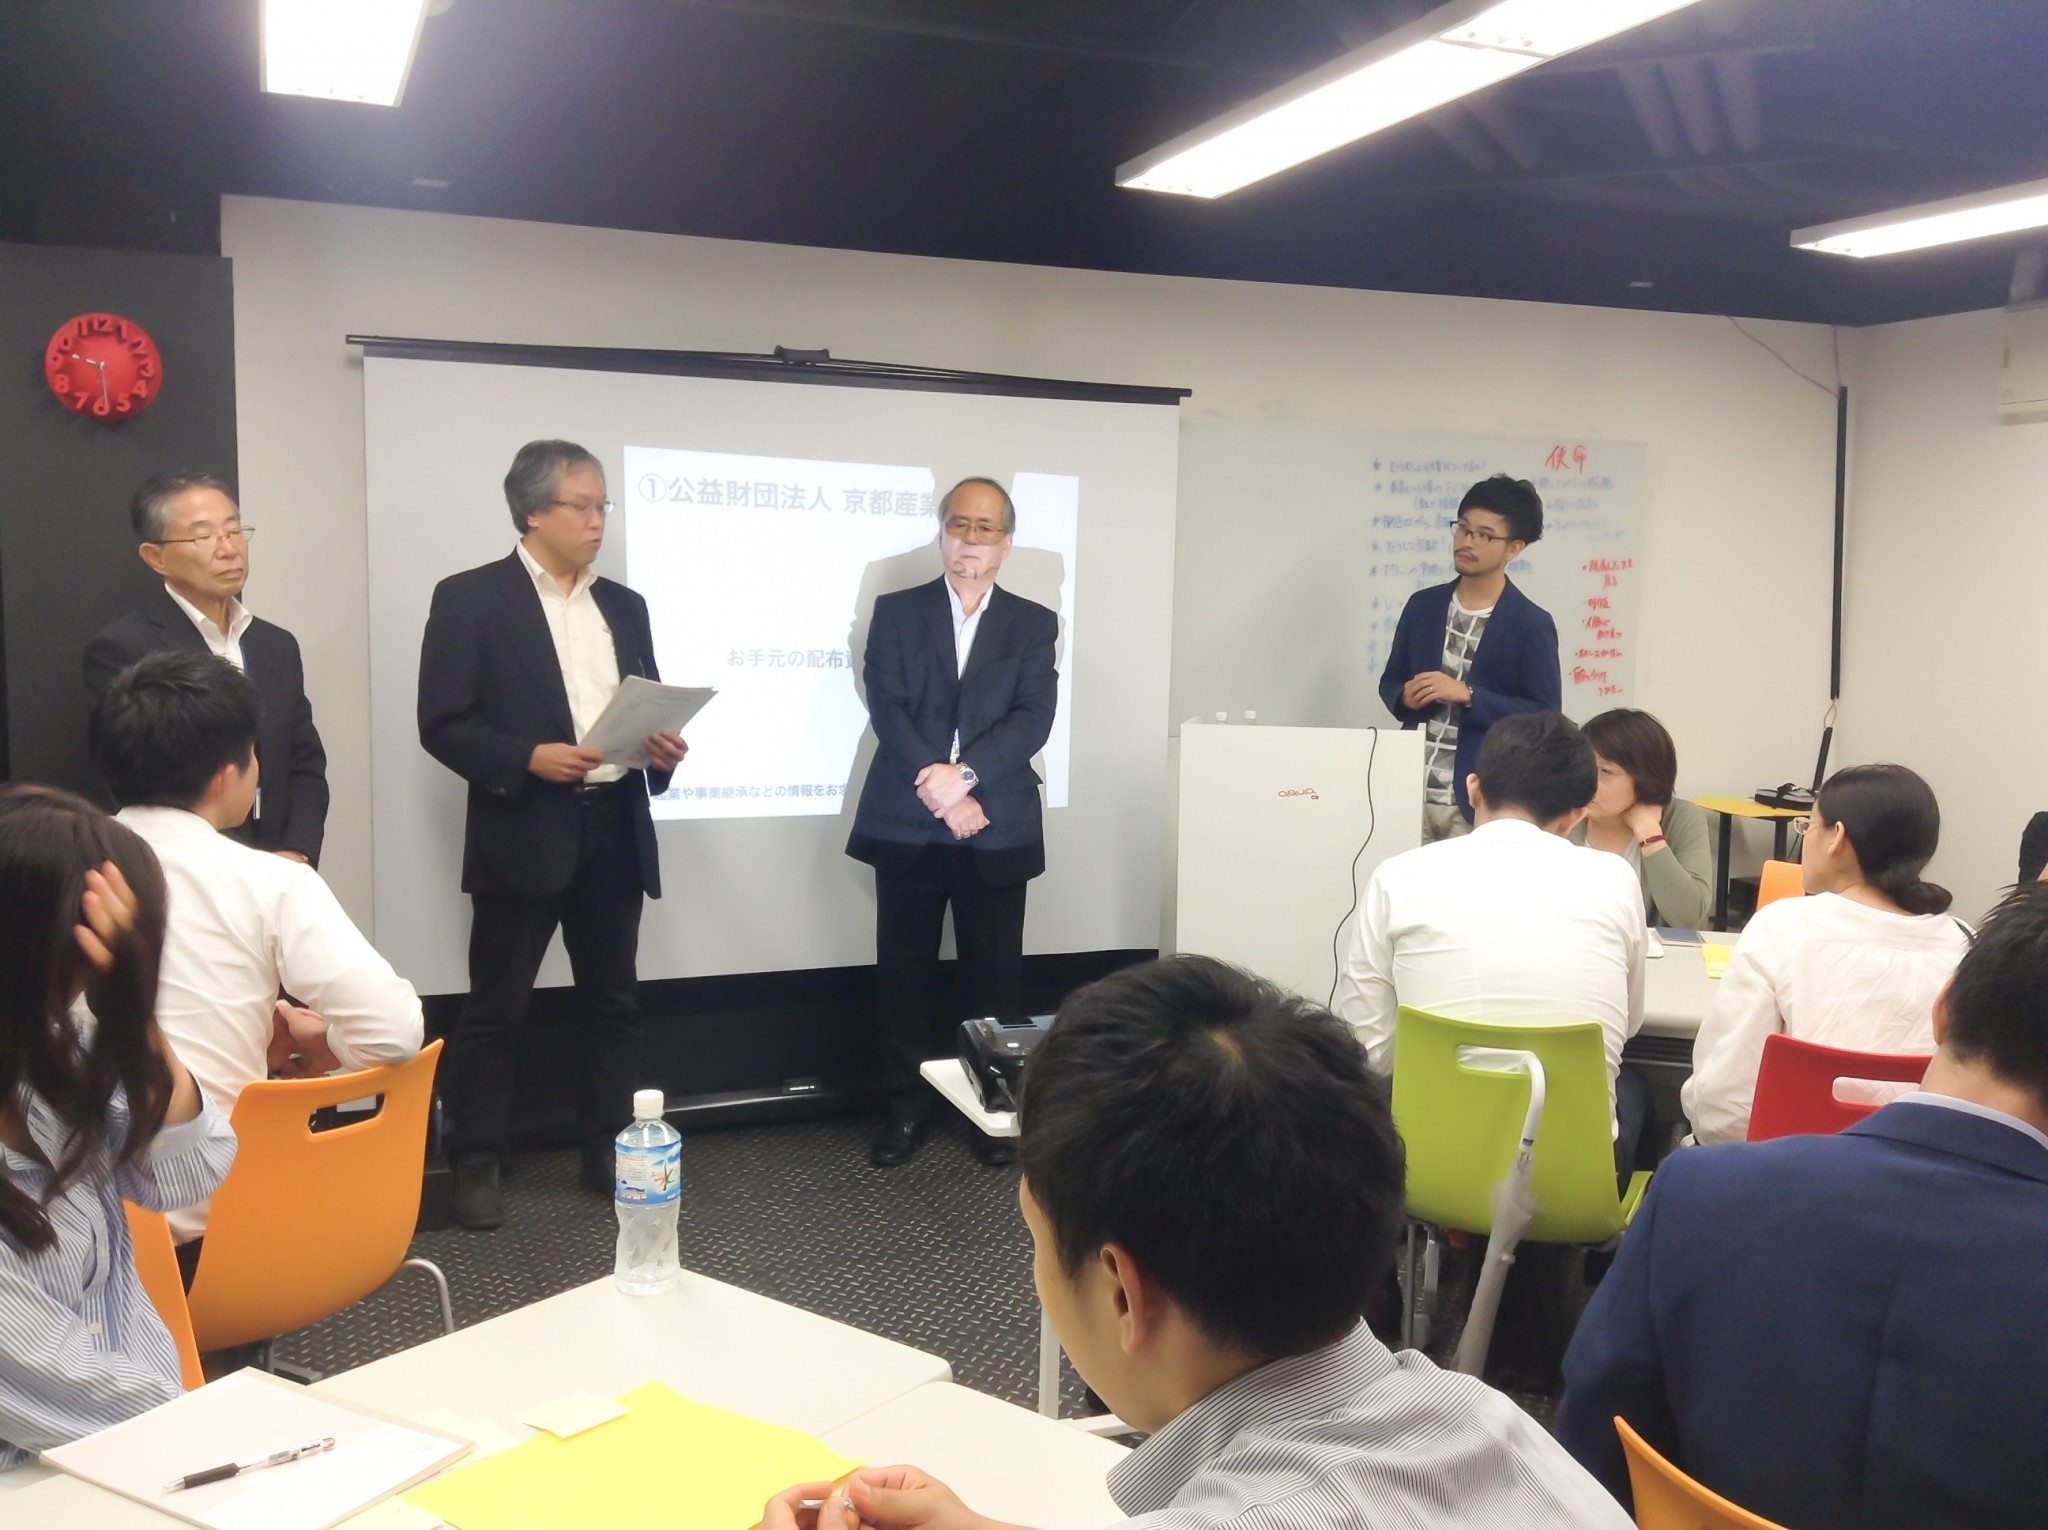 当イベントの共催である「京都産業21」のメンバー。京都での若者の起業支援など、制度面など幅広くサポートしている。